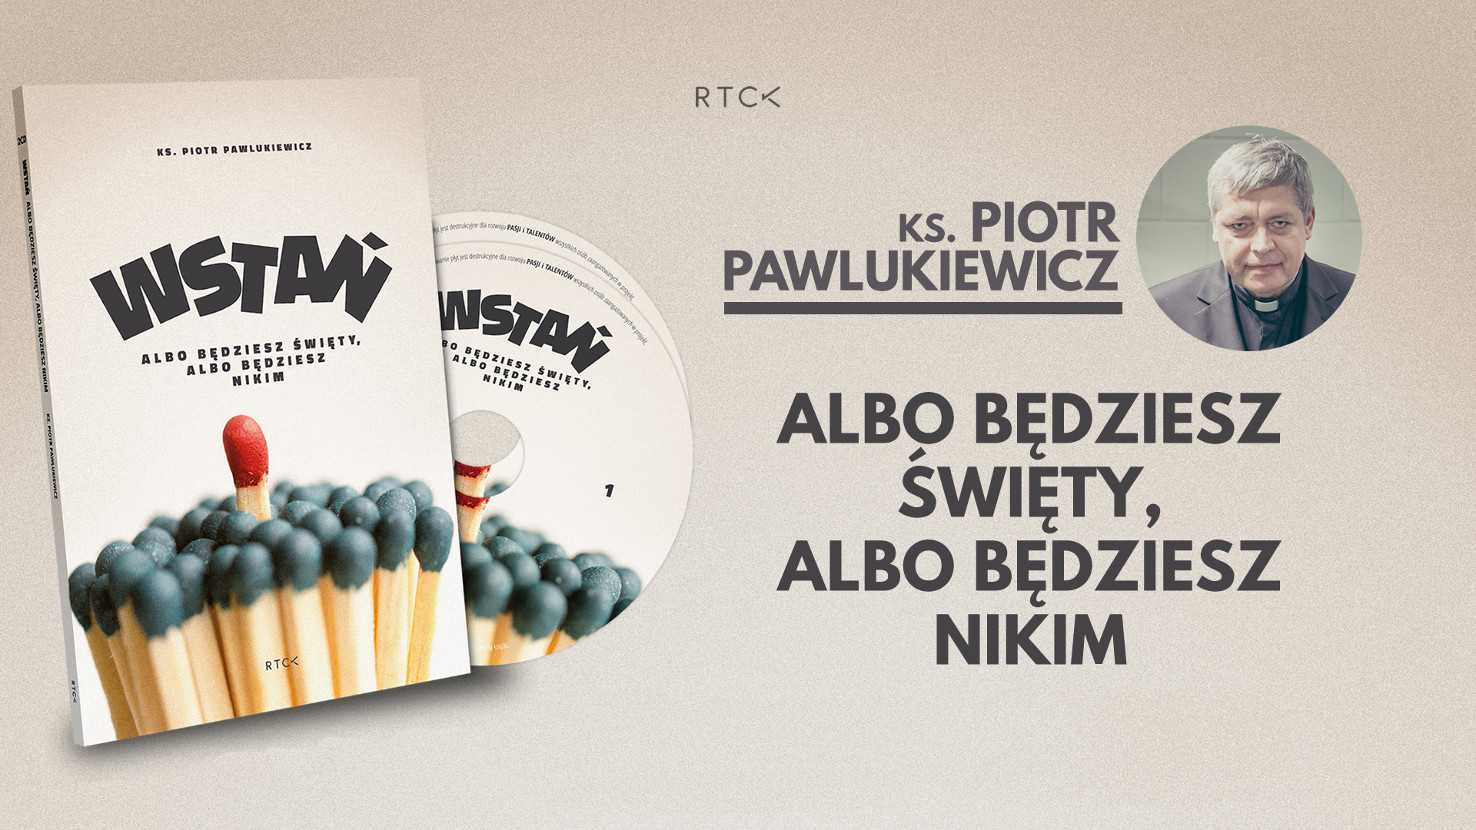 Wstań! - ks. Piotr Pawlukiewicz